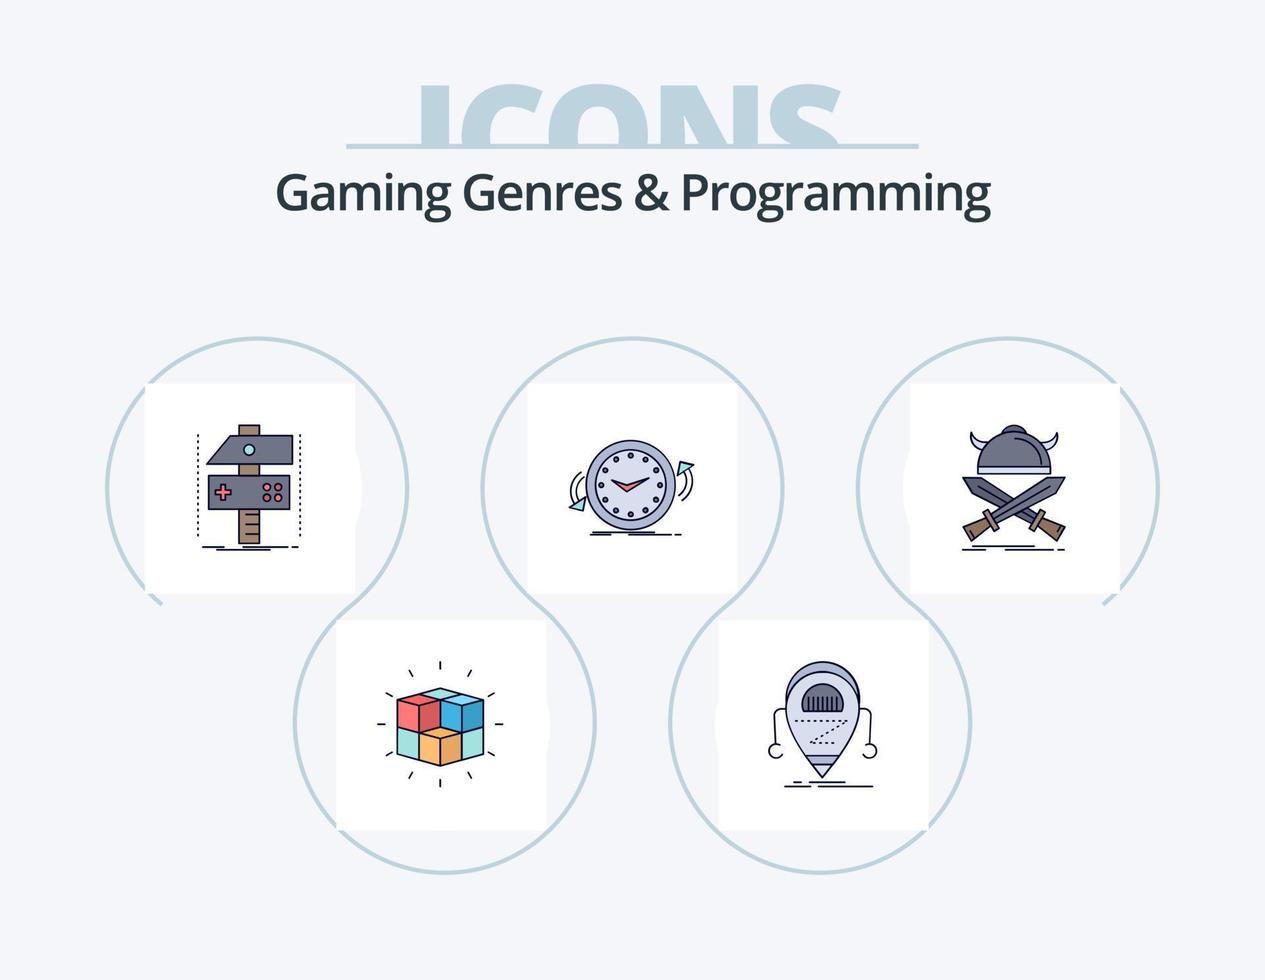 géneros de juegos y línea de programación llenos de iconos pack 5 diseño de iconos. juego de azar. arcada. matemáticas. cubo. rompecabezas vector